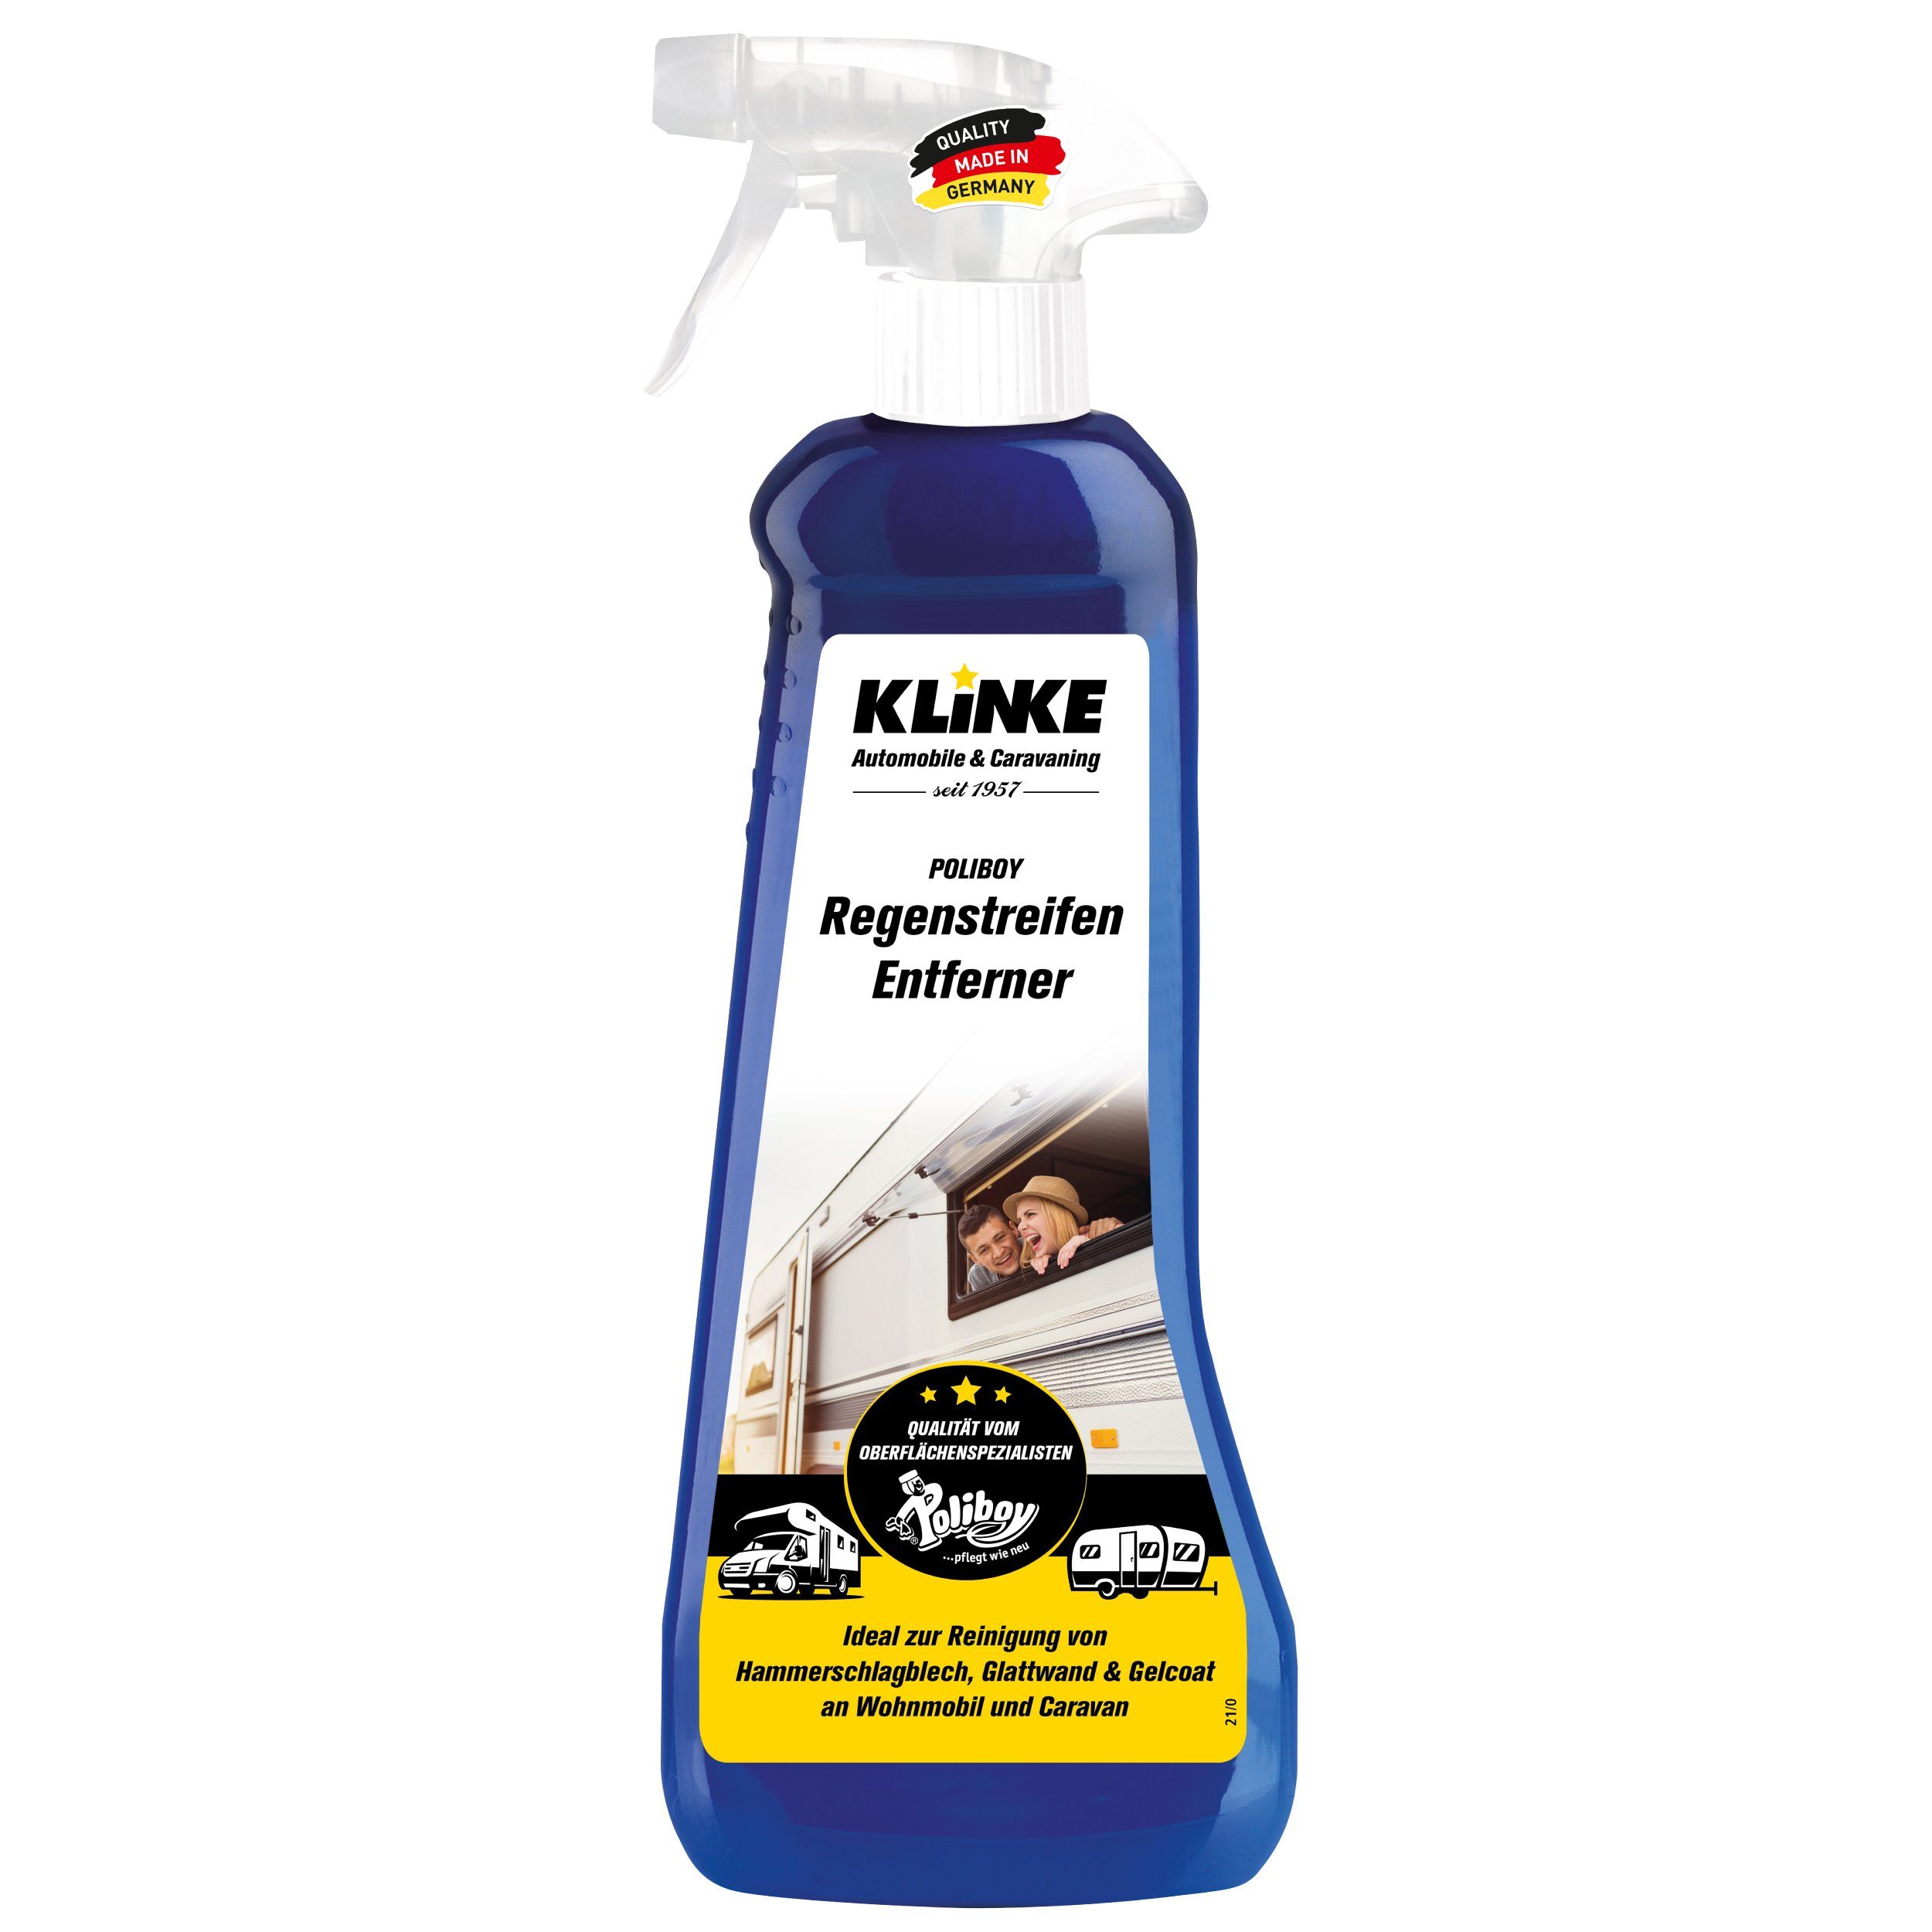 poliboy Klinke Regenstreifen Reiniger - 500 ml - Wohnmobil Pflegemittel Auto-Reinigungsmittel (beseitigt hartnäckige Verschmutzungen- Made in Germany)